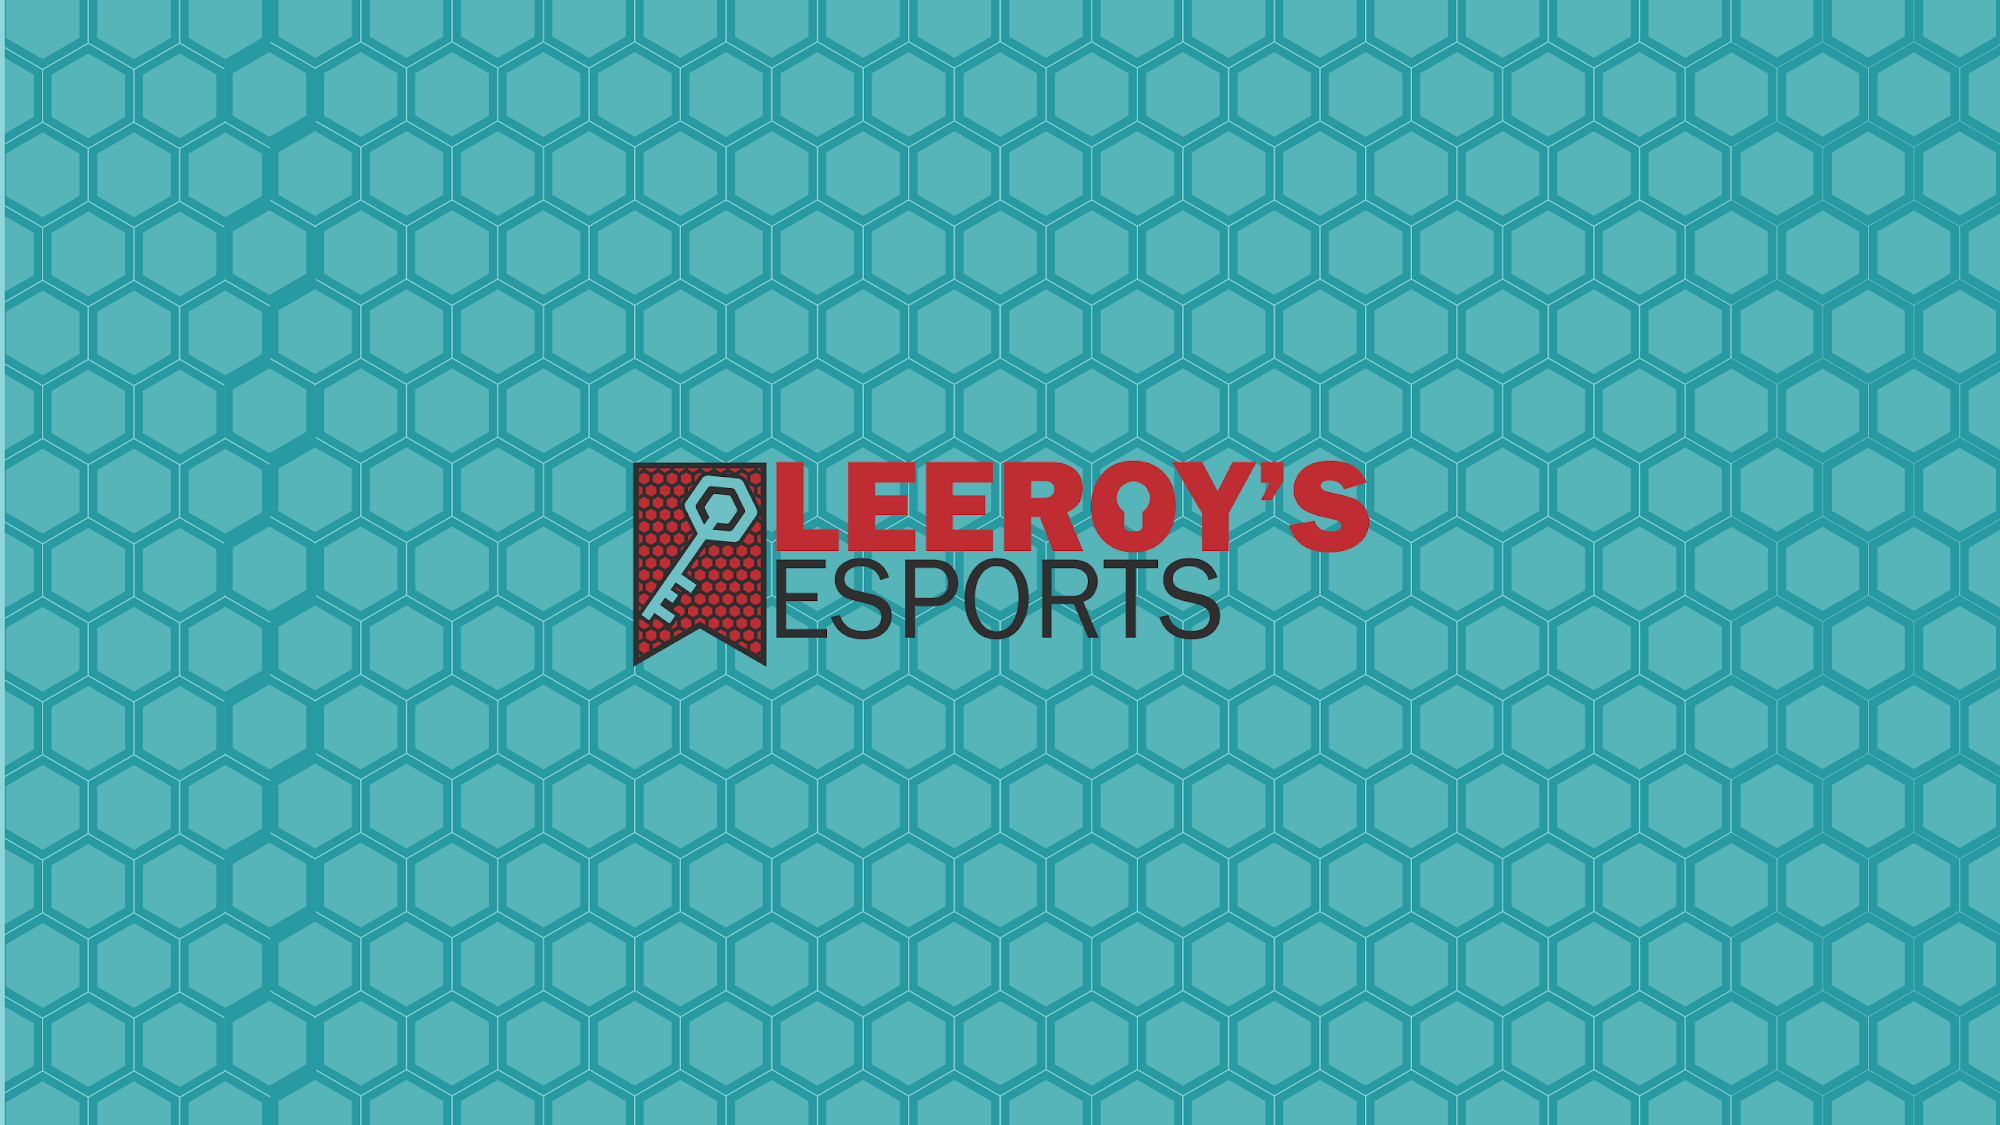 Leeroys Esports